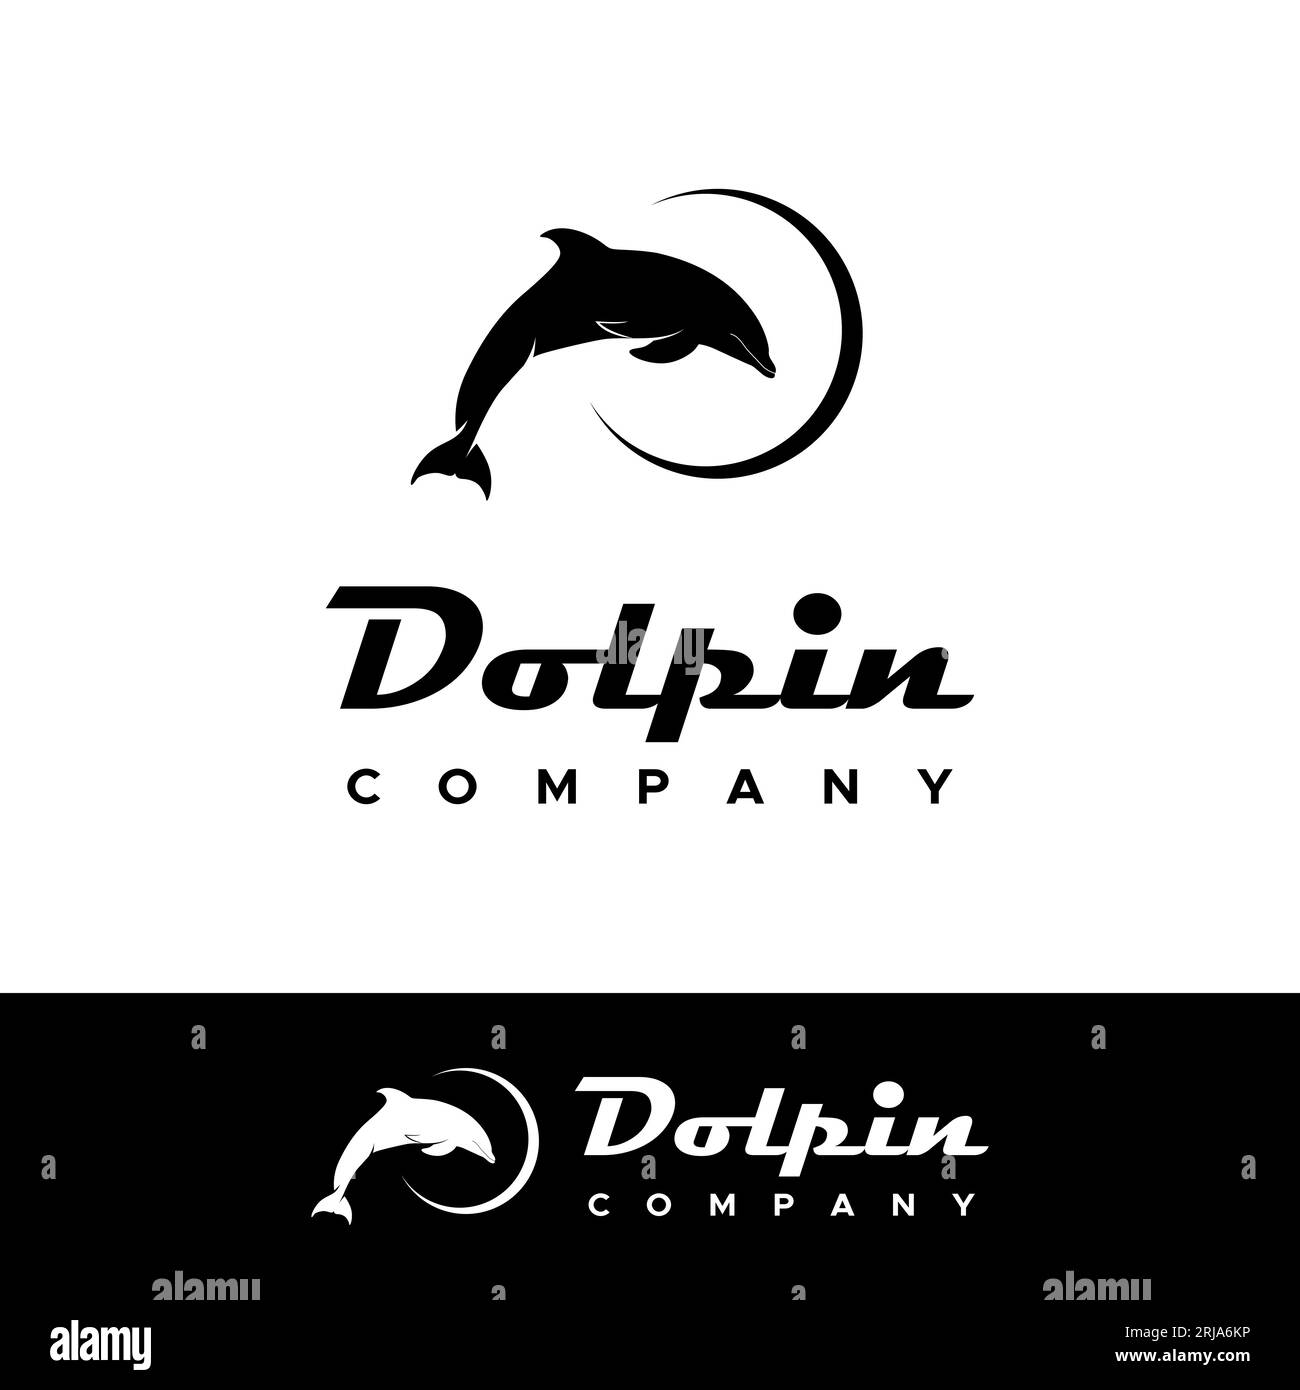 Logo acrobatique Dolphin Jumping Silhouette Design inspiration Illustration de Vecteur